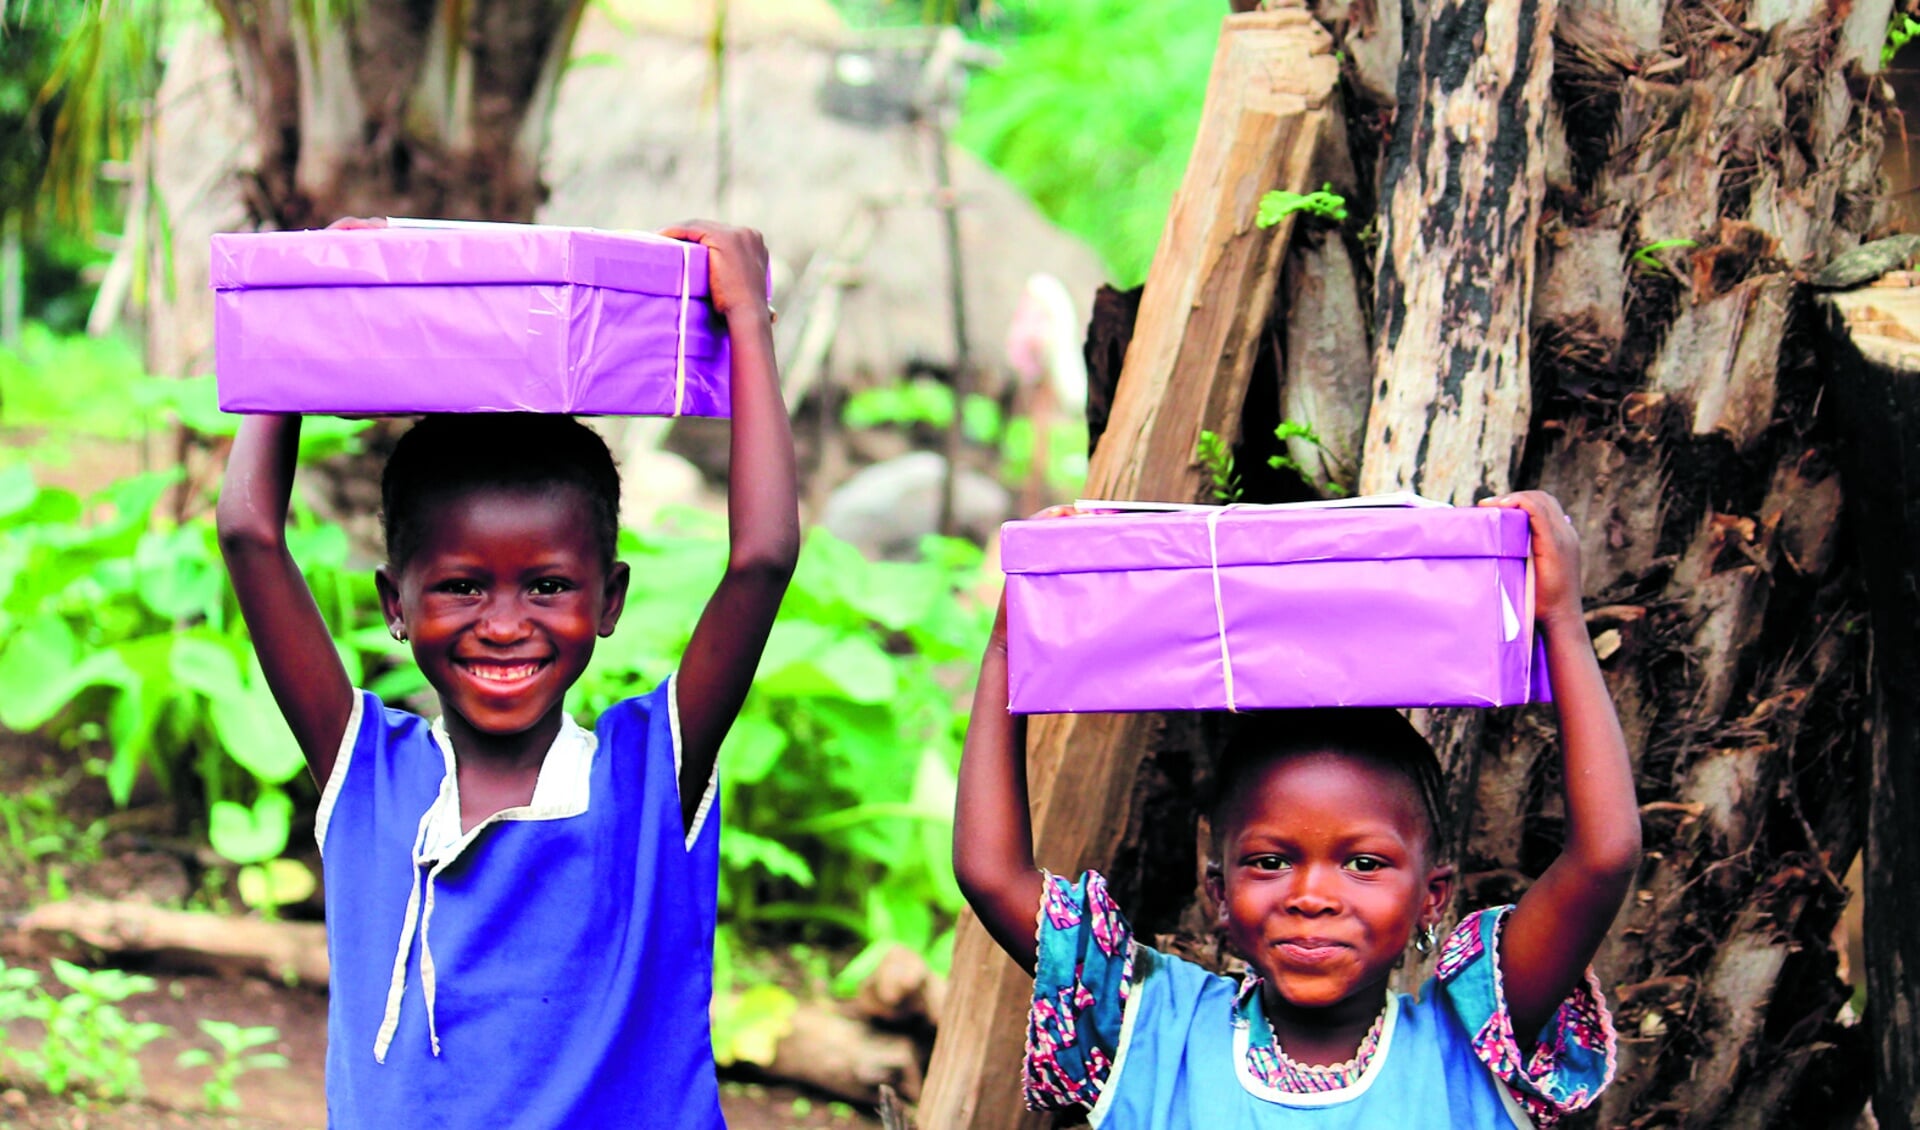 Het ontvangen van een versierde en gevulde schoenendoos is voor deze kinderen heel bijzonder. (Foto: archief Rodi Media)